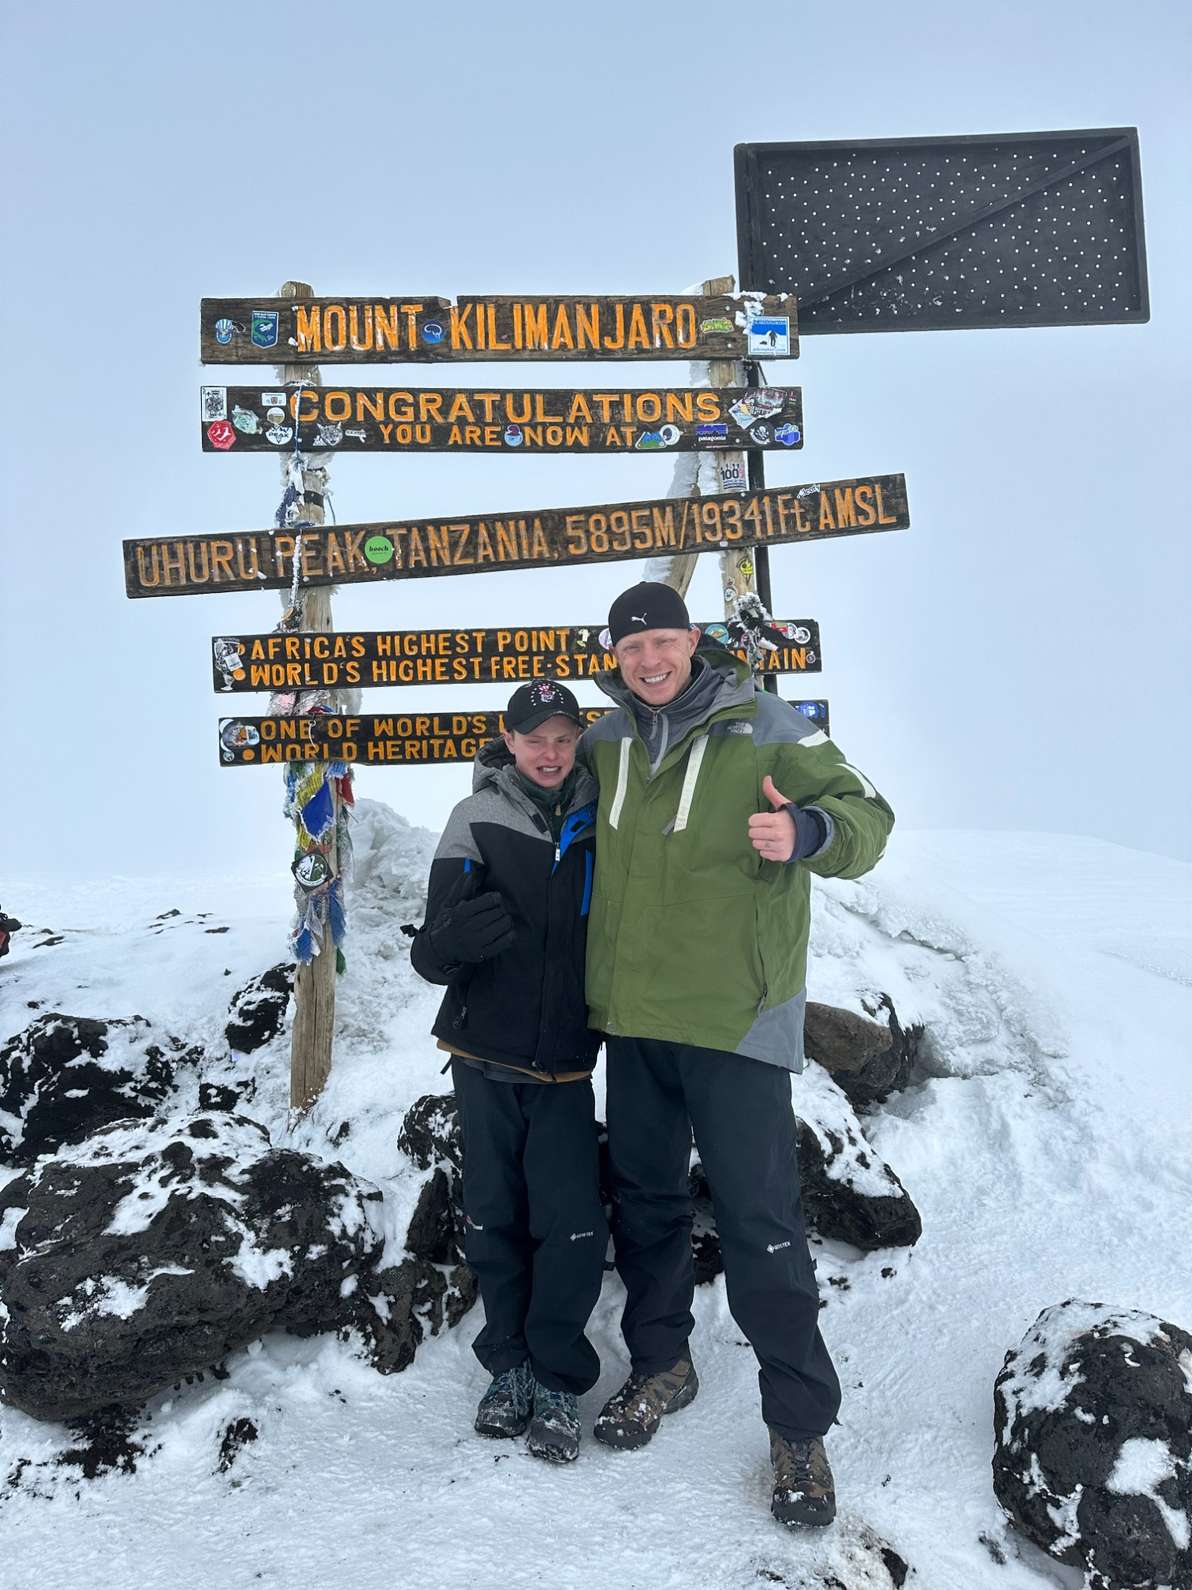 Pierce Valliere kilimanjaro